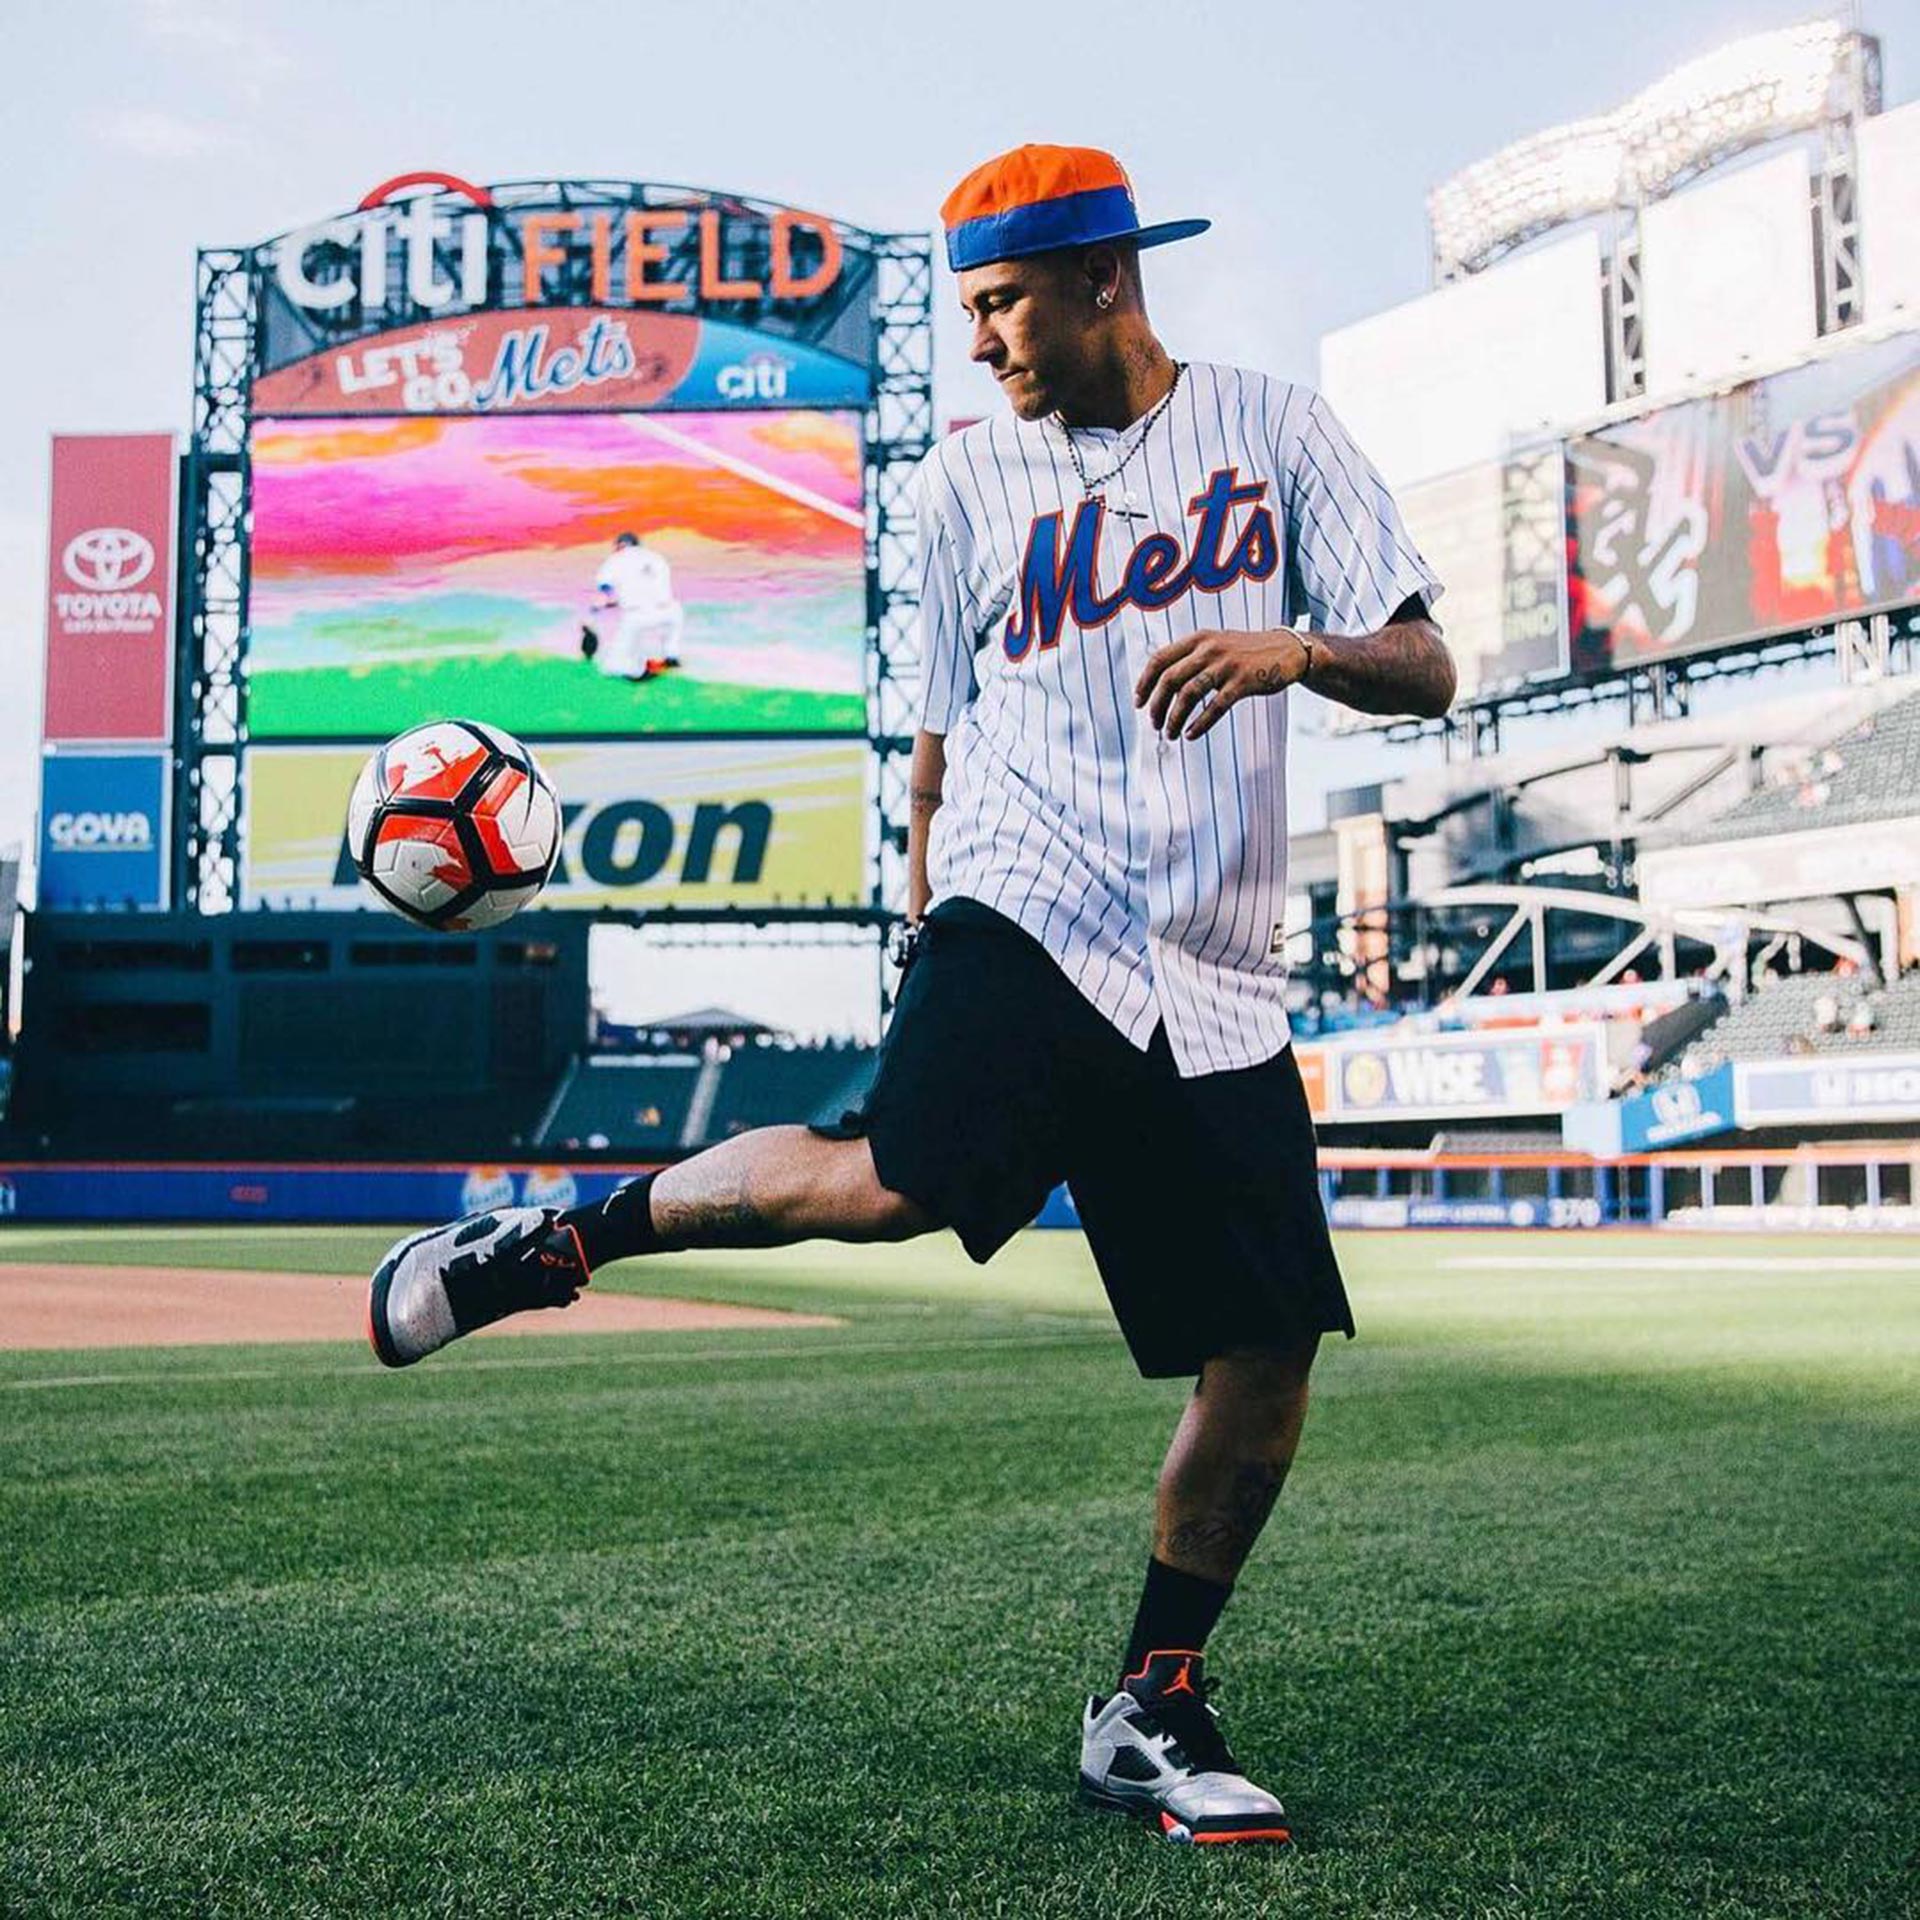 Neymar también vistió el estadio de los Mets en aquel viaje a Nueva York en 2016 (Foto: @neymarjr)